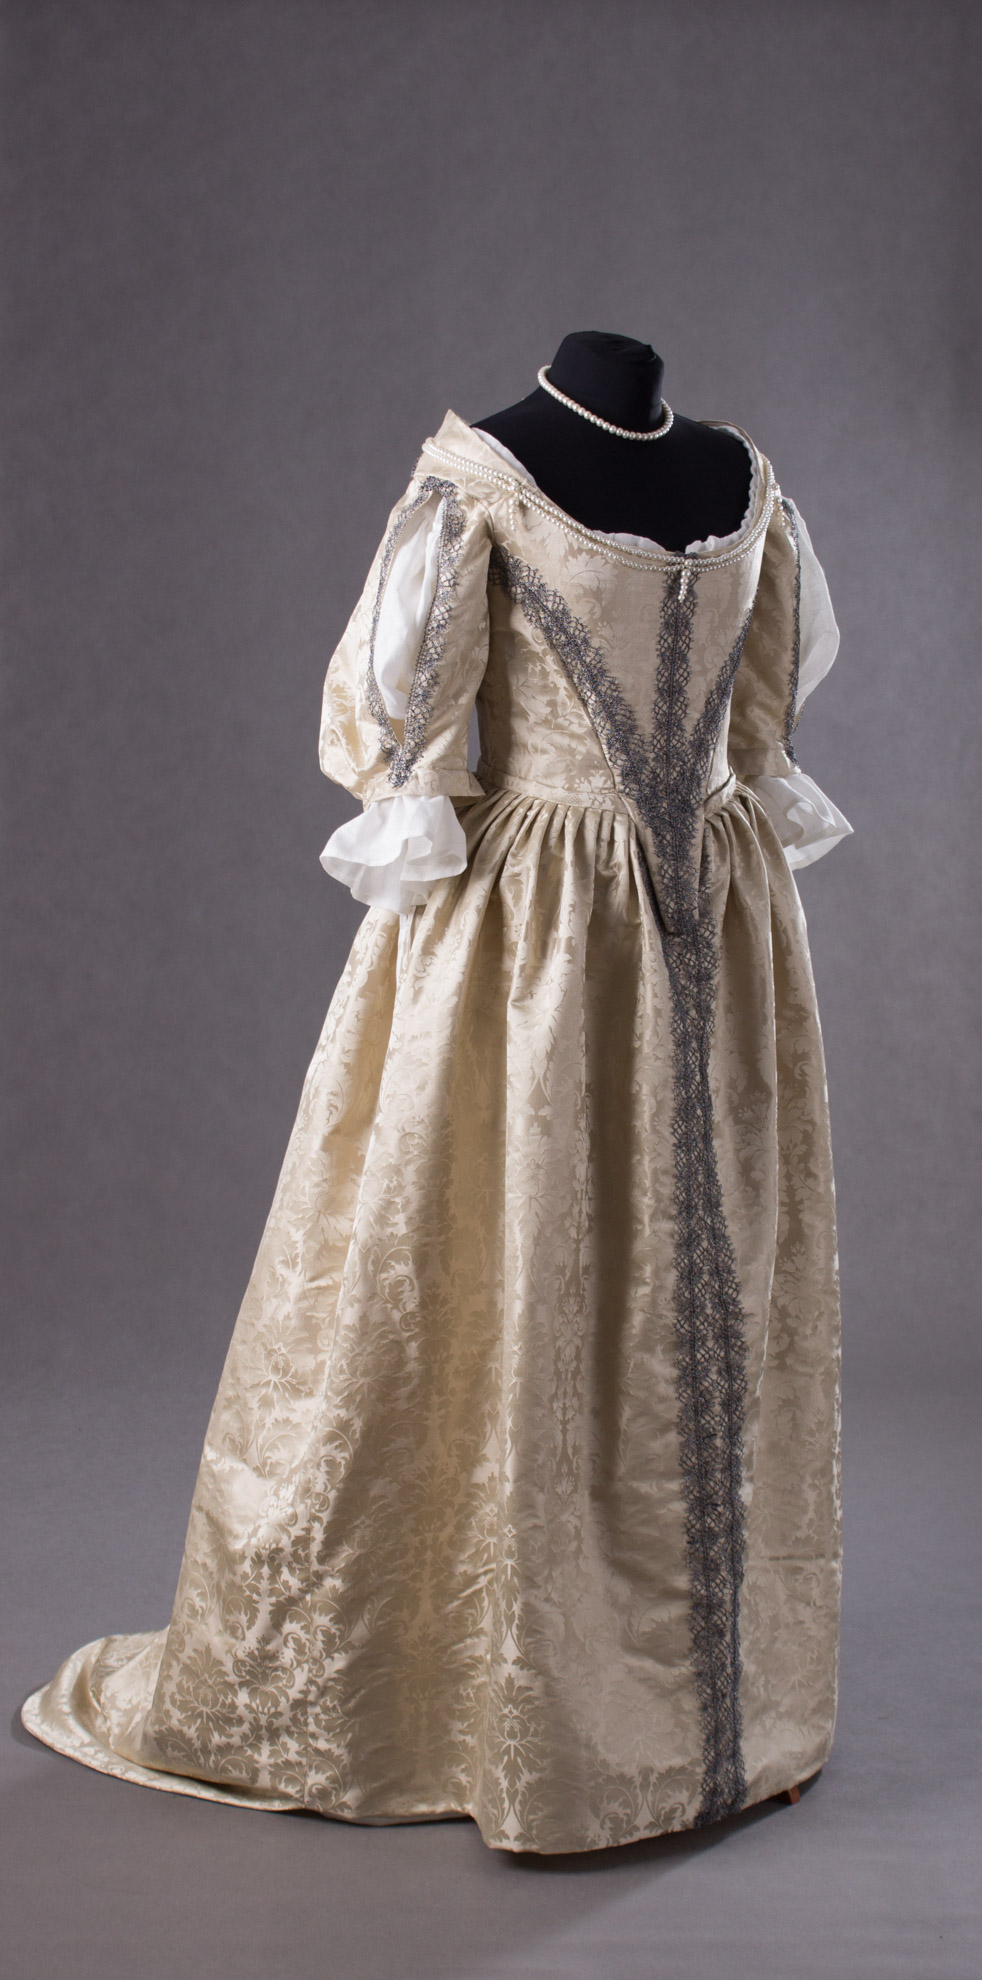 suknia-z-adamaszku-jedwabnego-1660-3-of-8